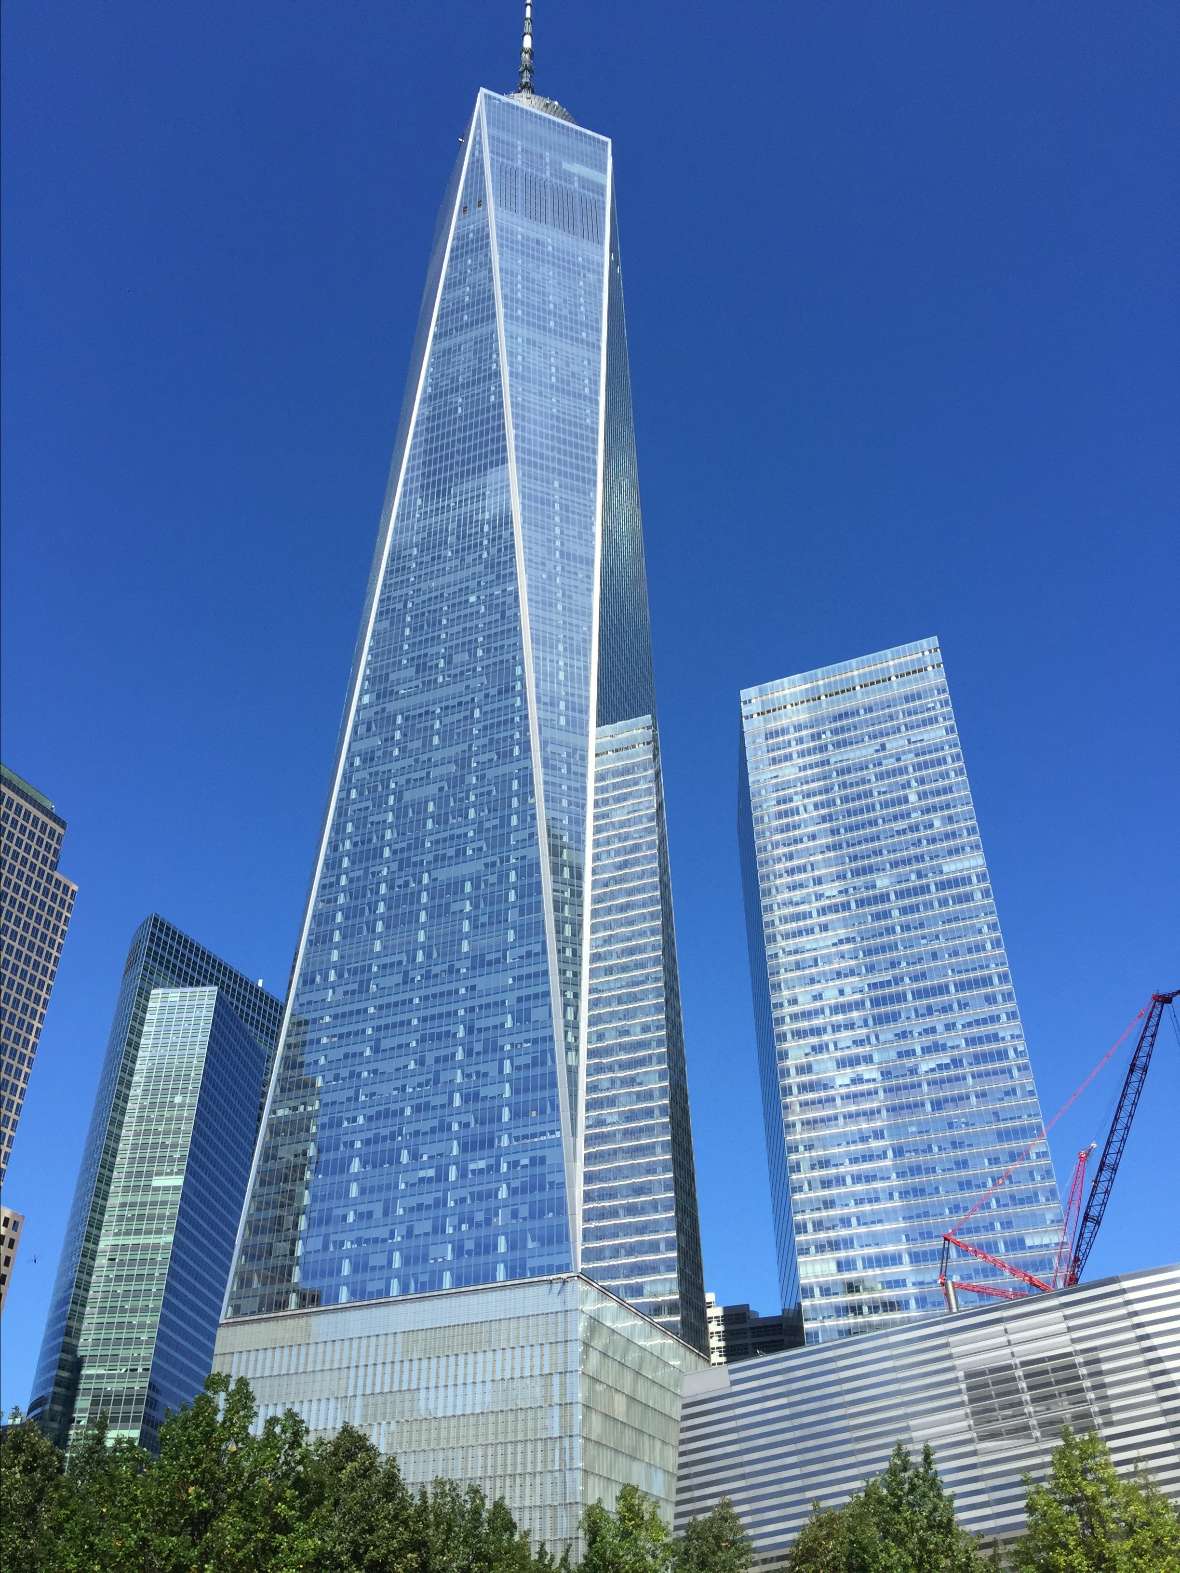 Der gigantische Turm des neuen One World Trade Center